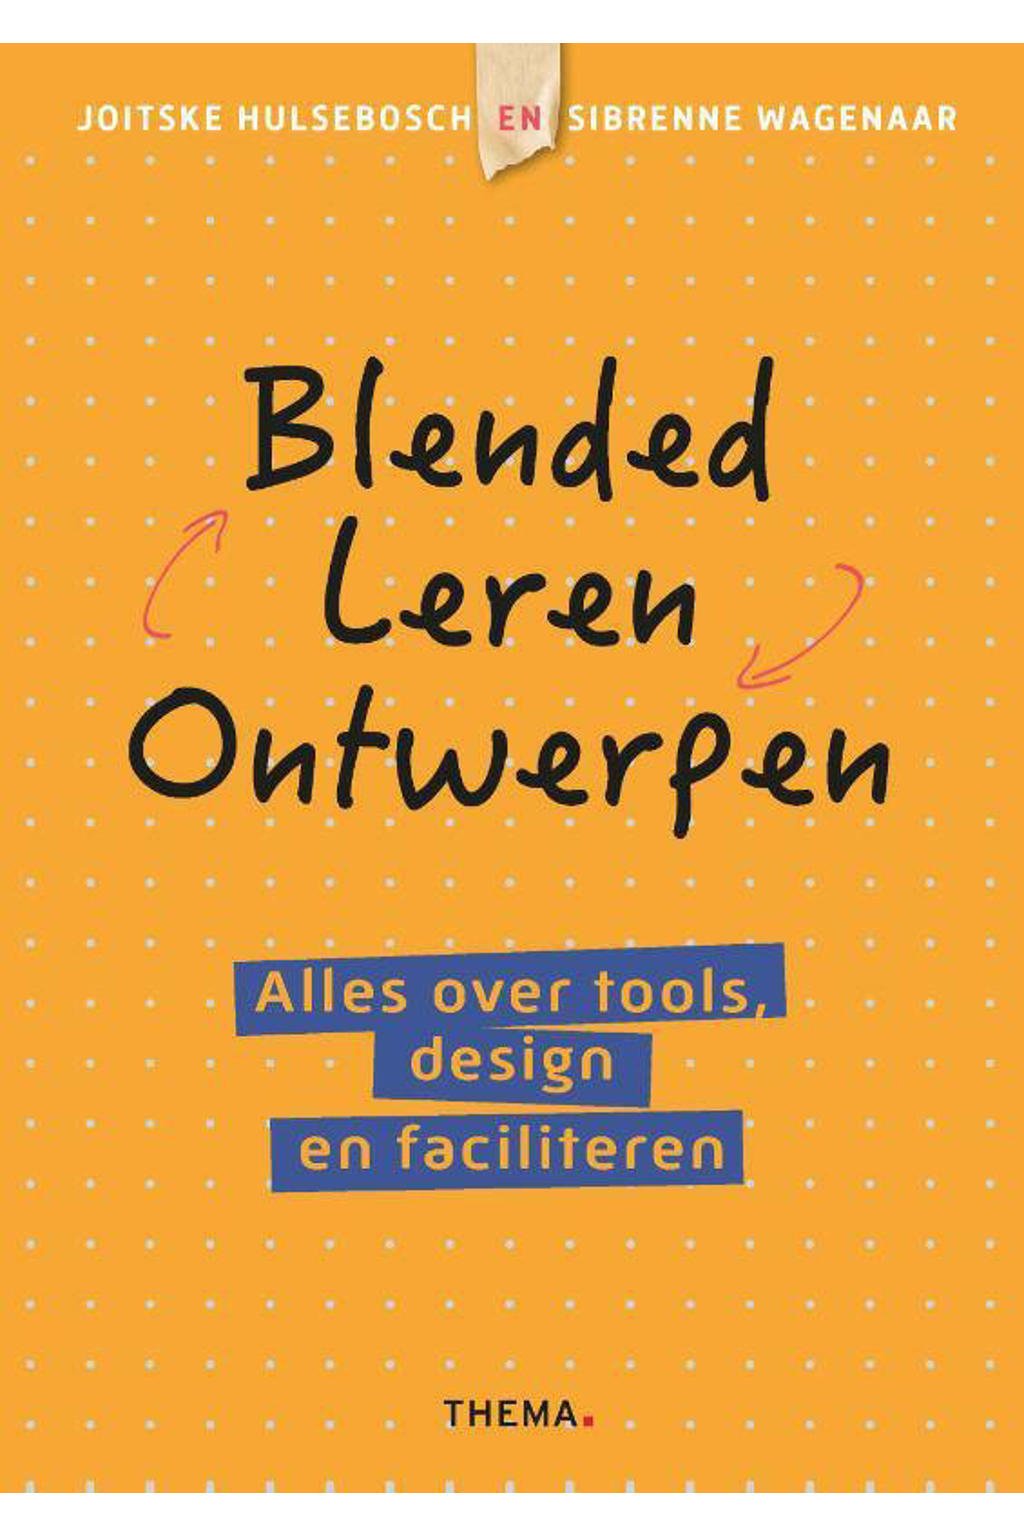 Blended leren ontwerpen - Joitske Hulsebosch en Sibrenne Wagenaar